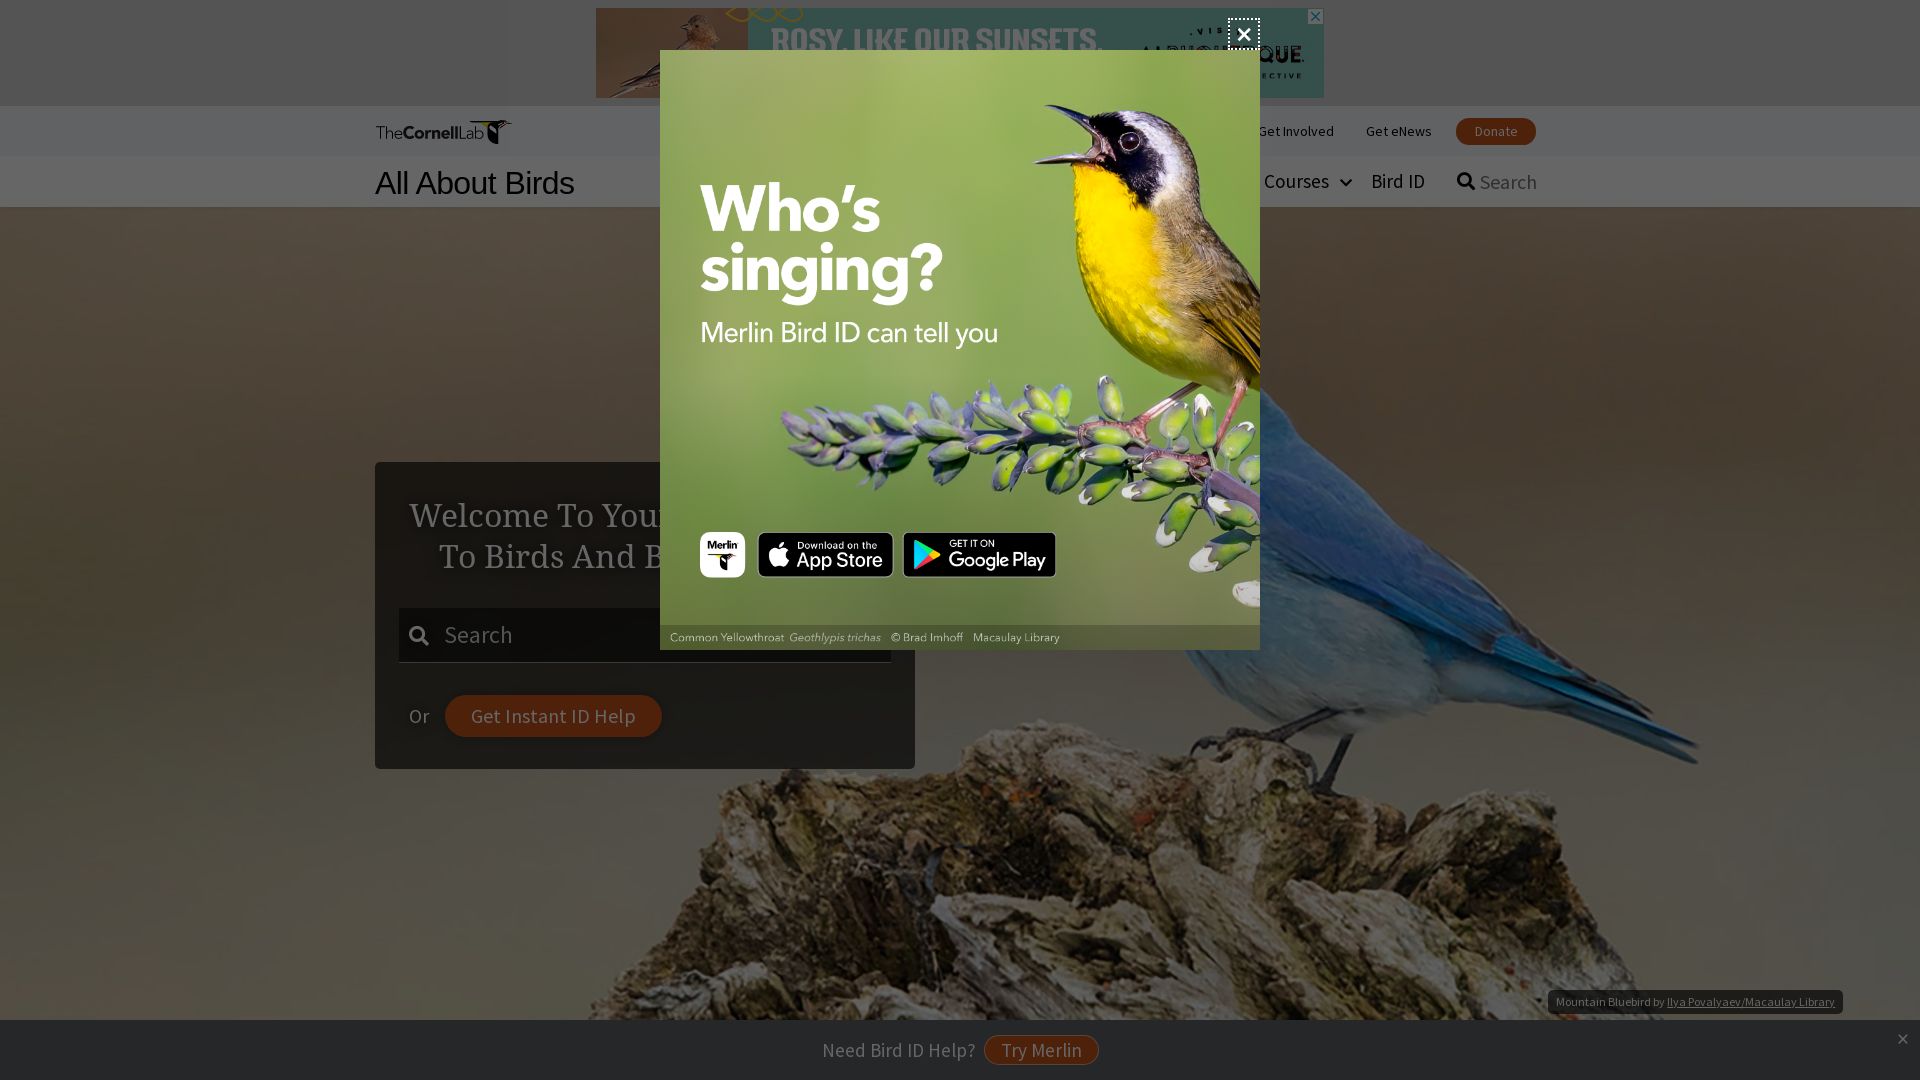 État du site web allaboutbirds.org est   EN LIGNE